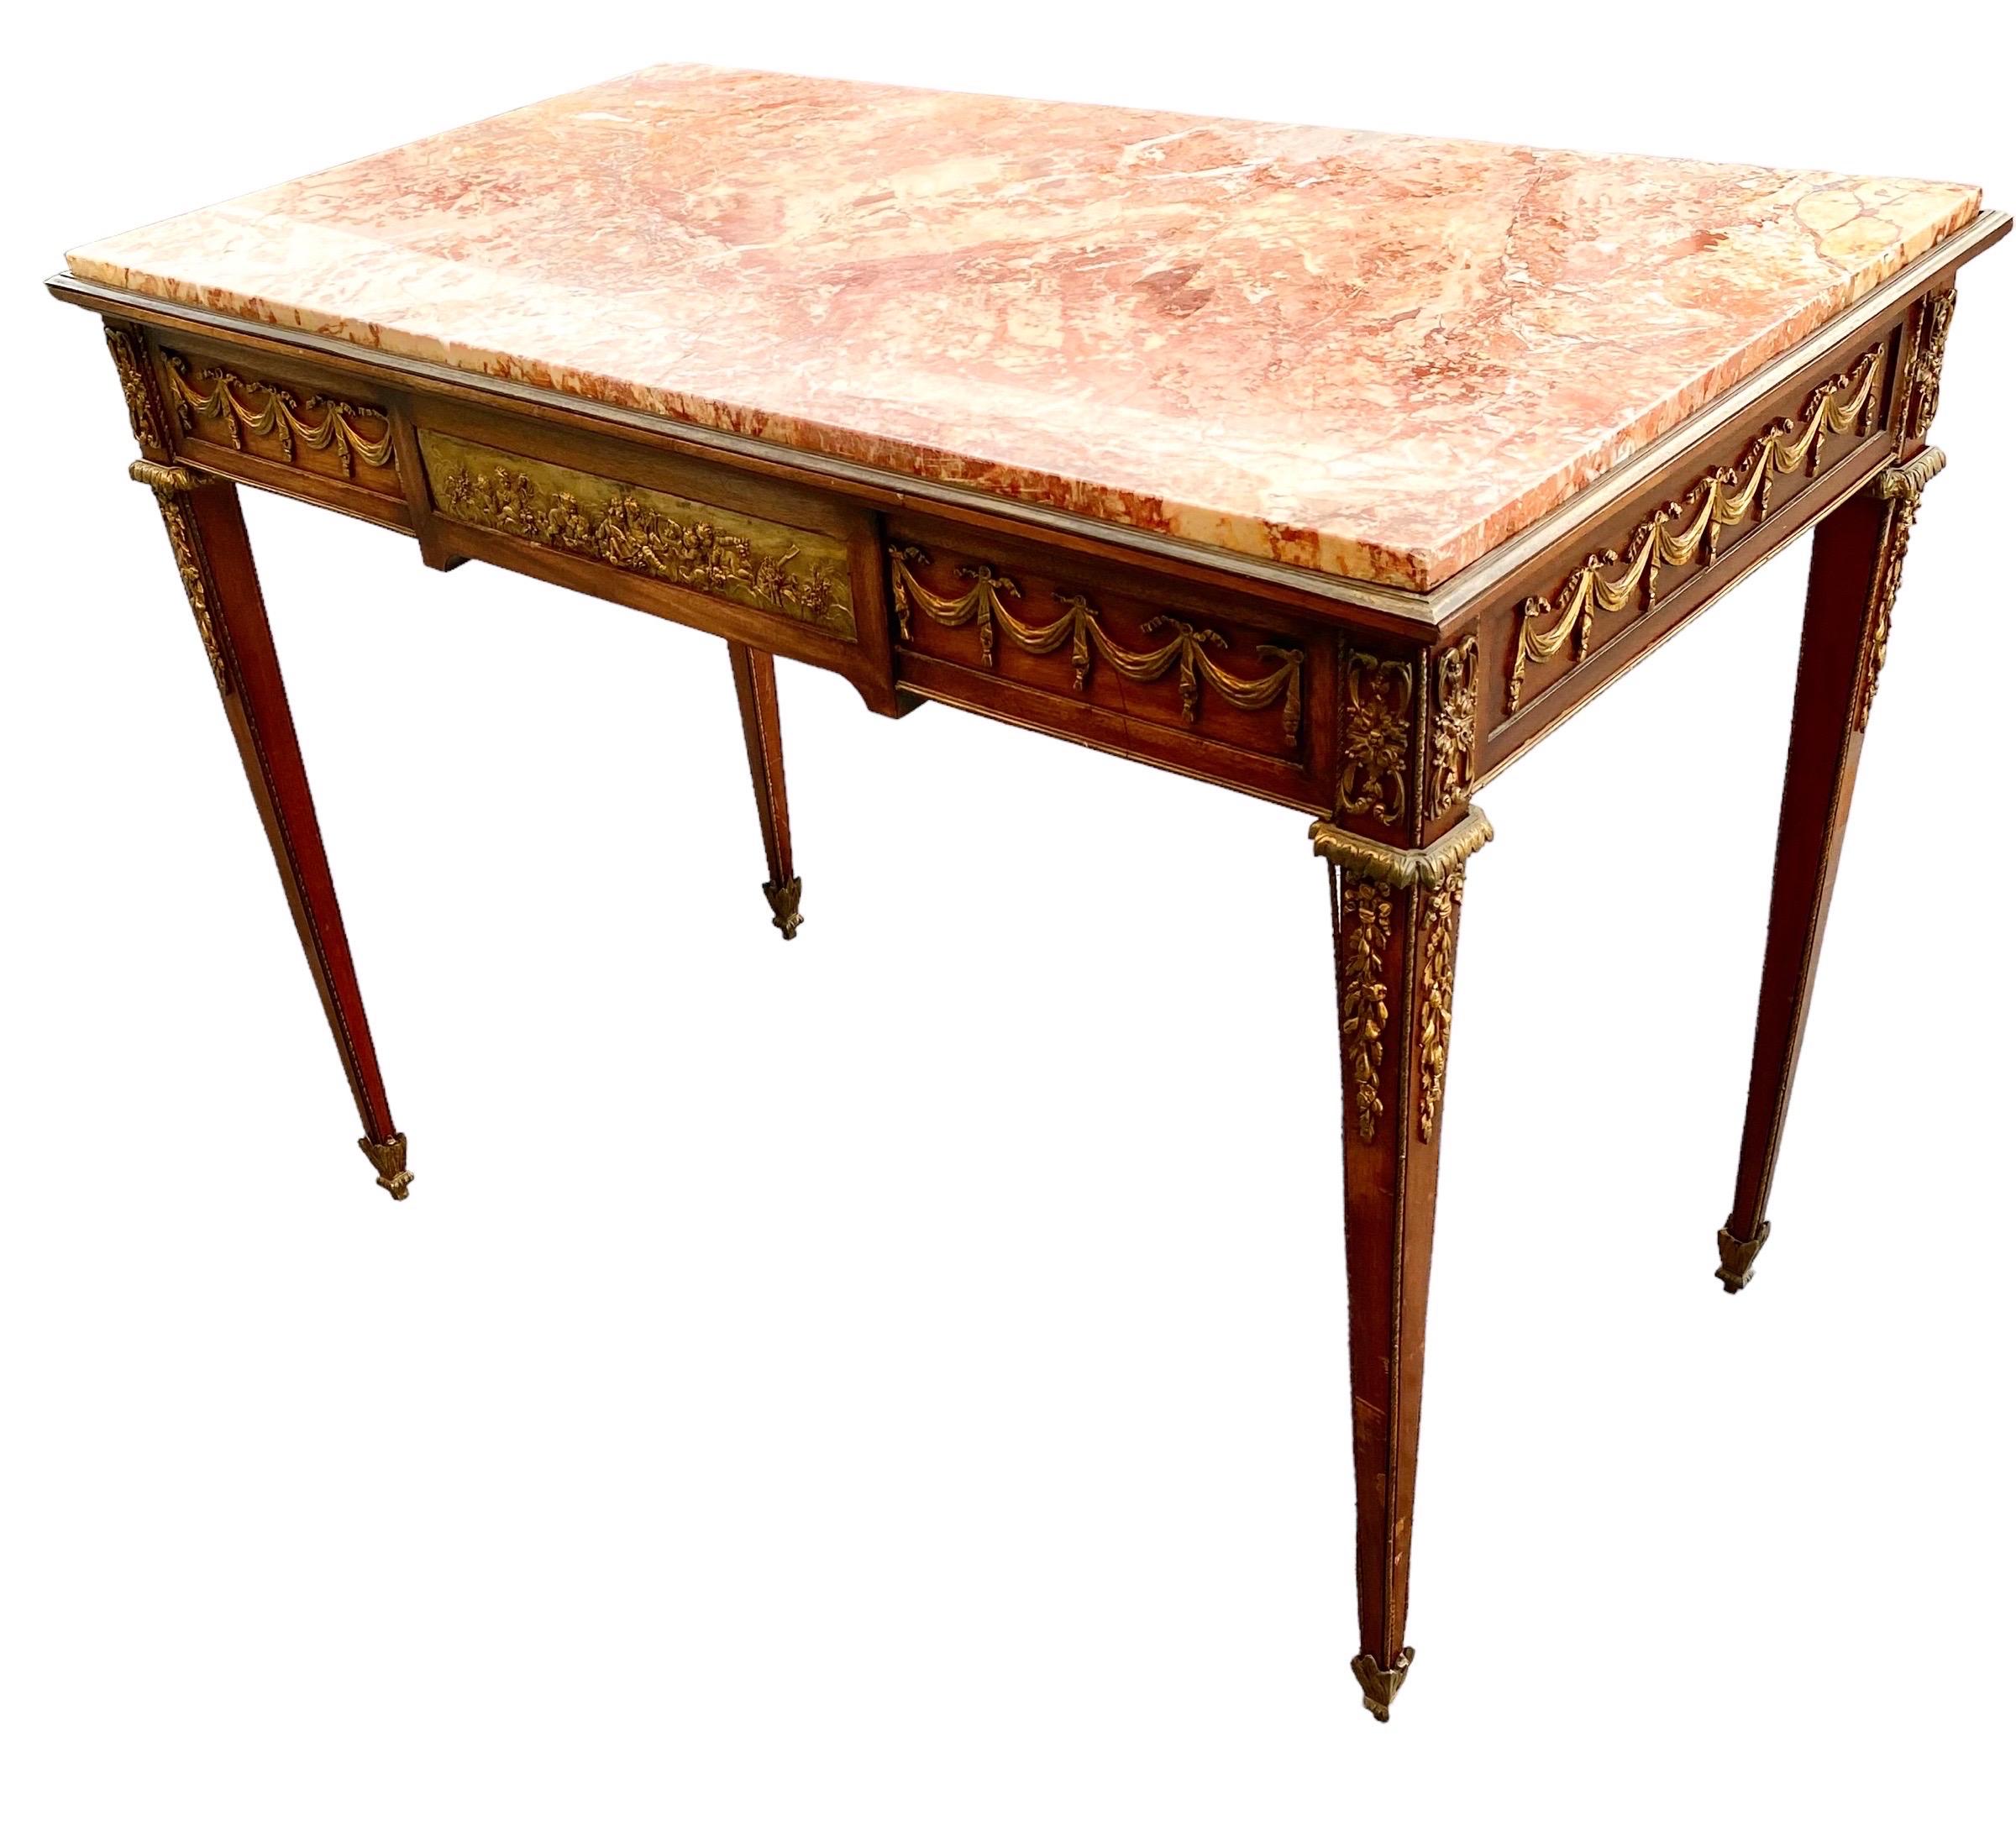 Une élégante table/bureau de très haute qualité du début du 20e siècle en acajou Louis XVI, bronze doré et marbre Arabescato au centre et sur le côté, attribuée à François Linke. La table repose sur des pieds circulaires fuselés et cannelés, avec